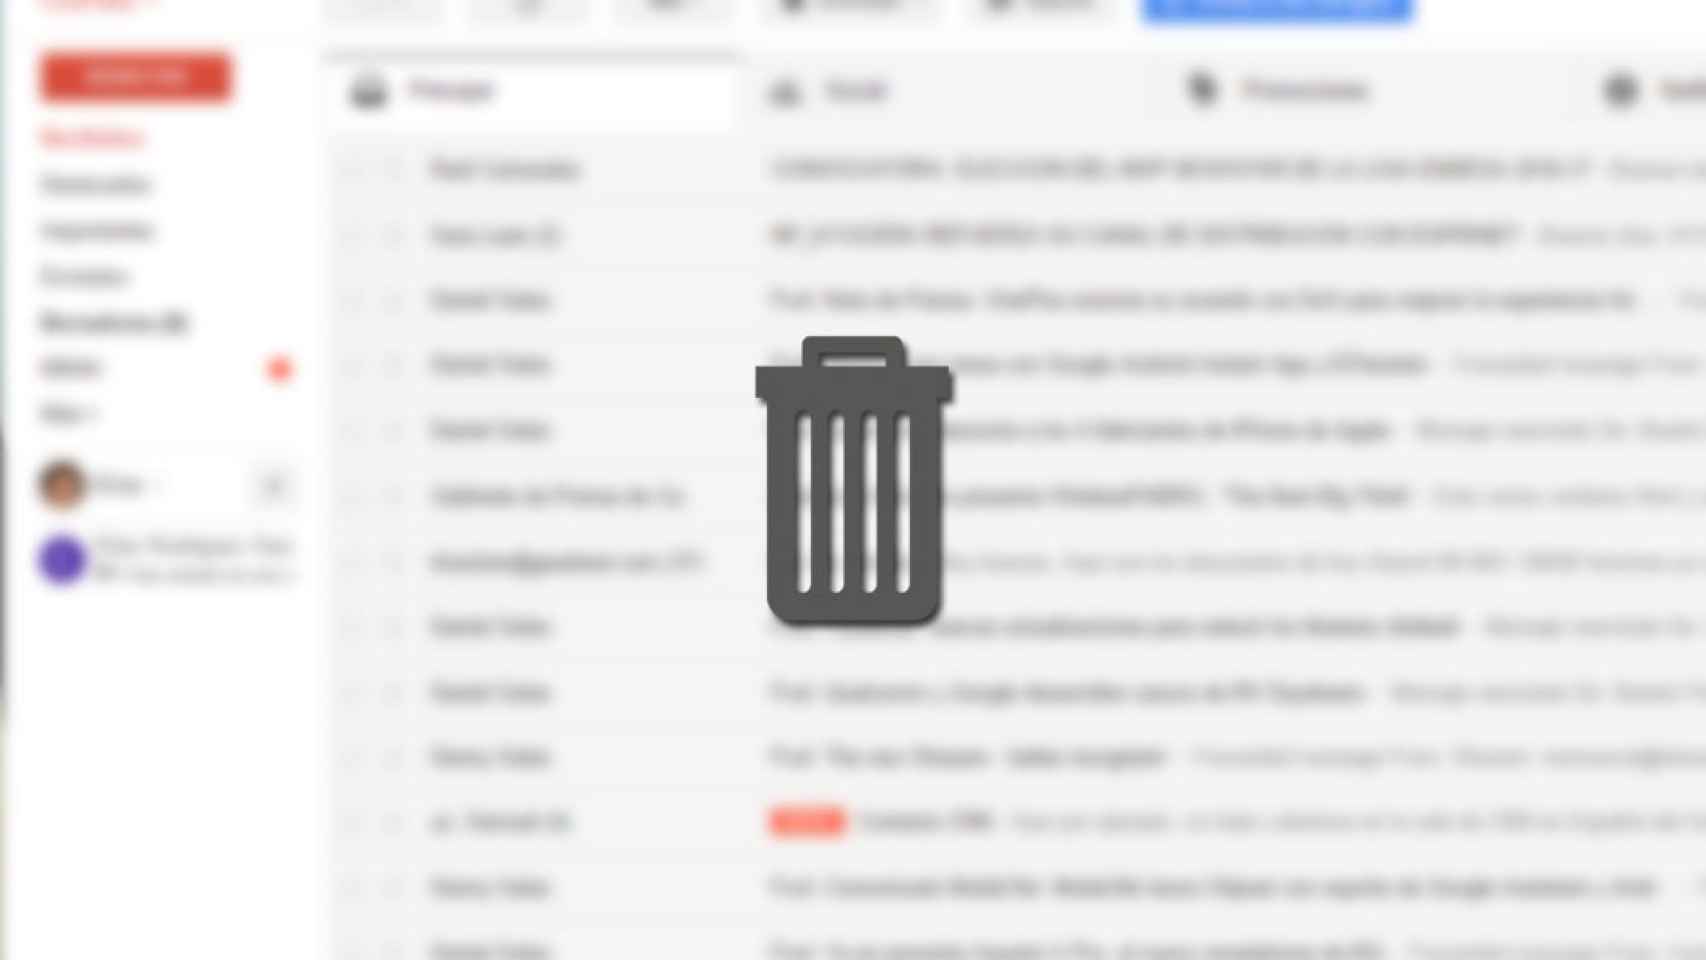 borrar-correo-gmail